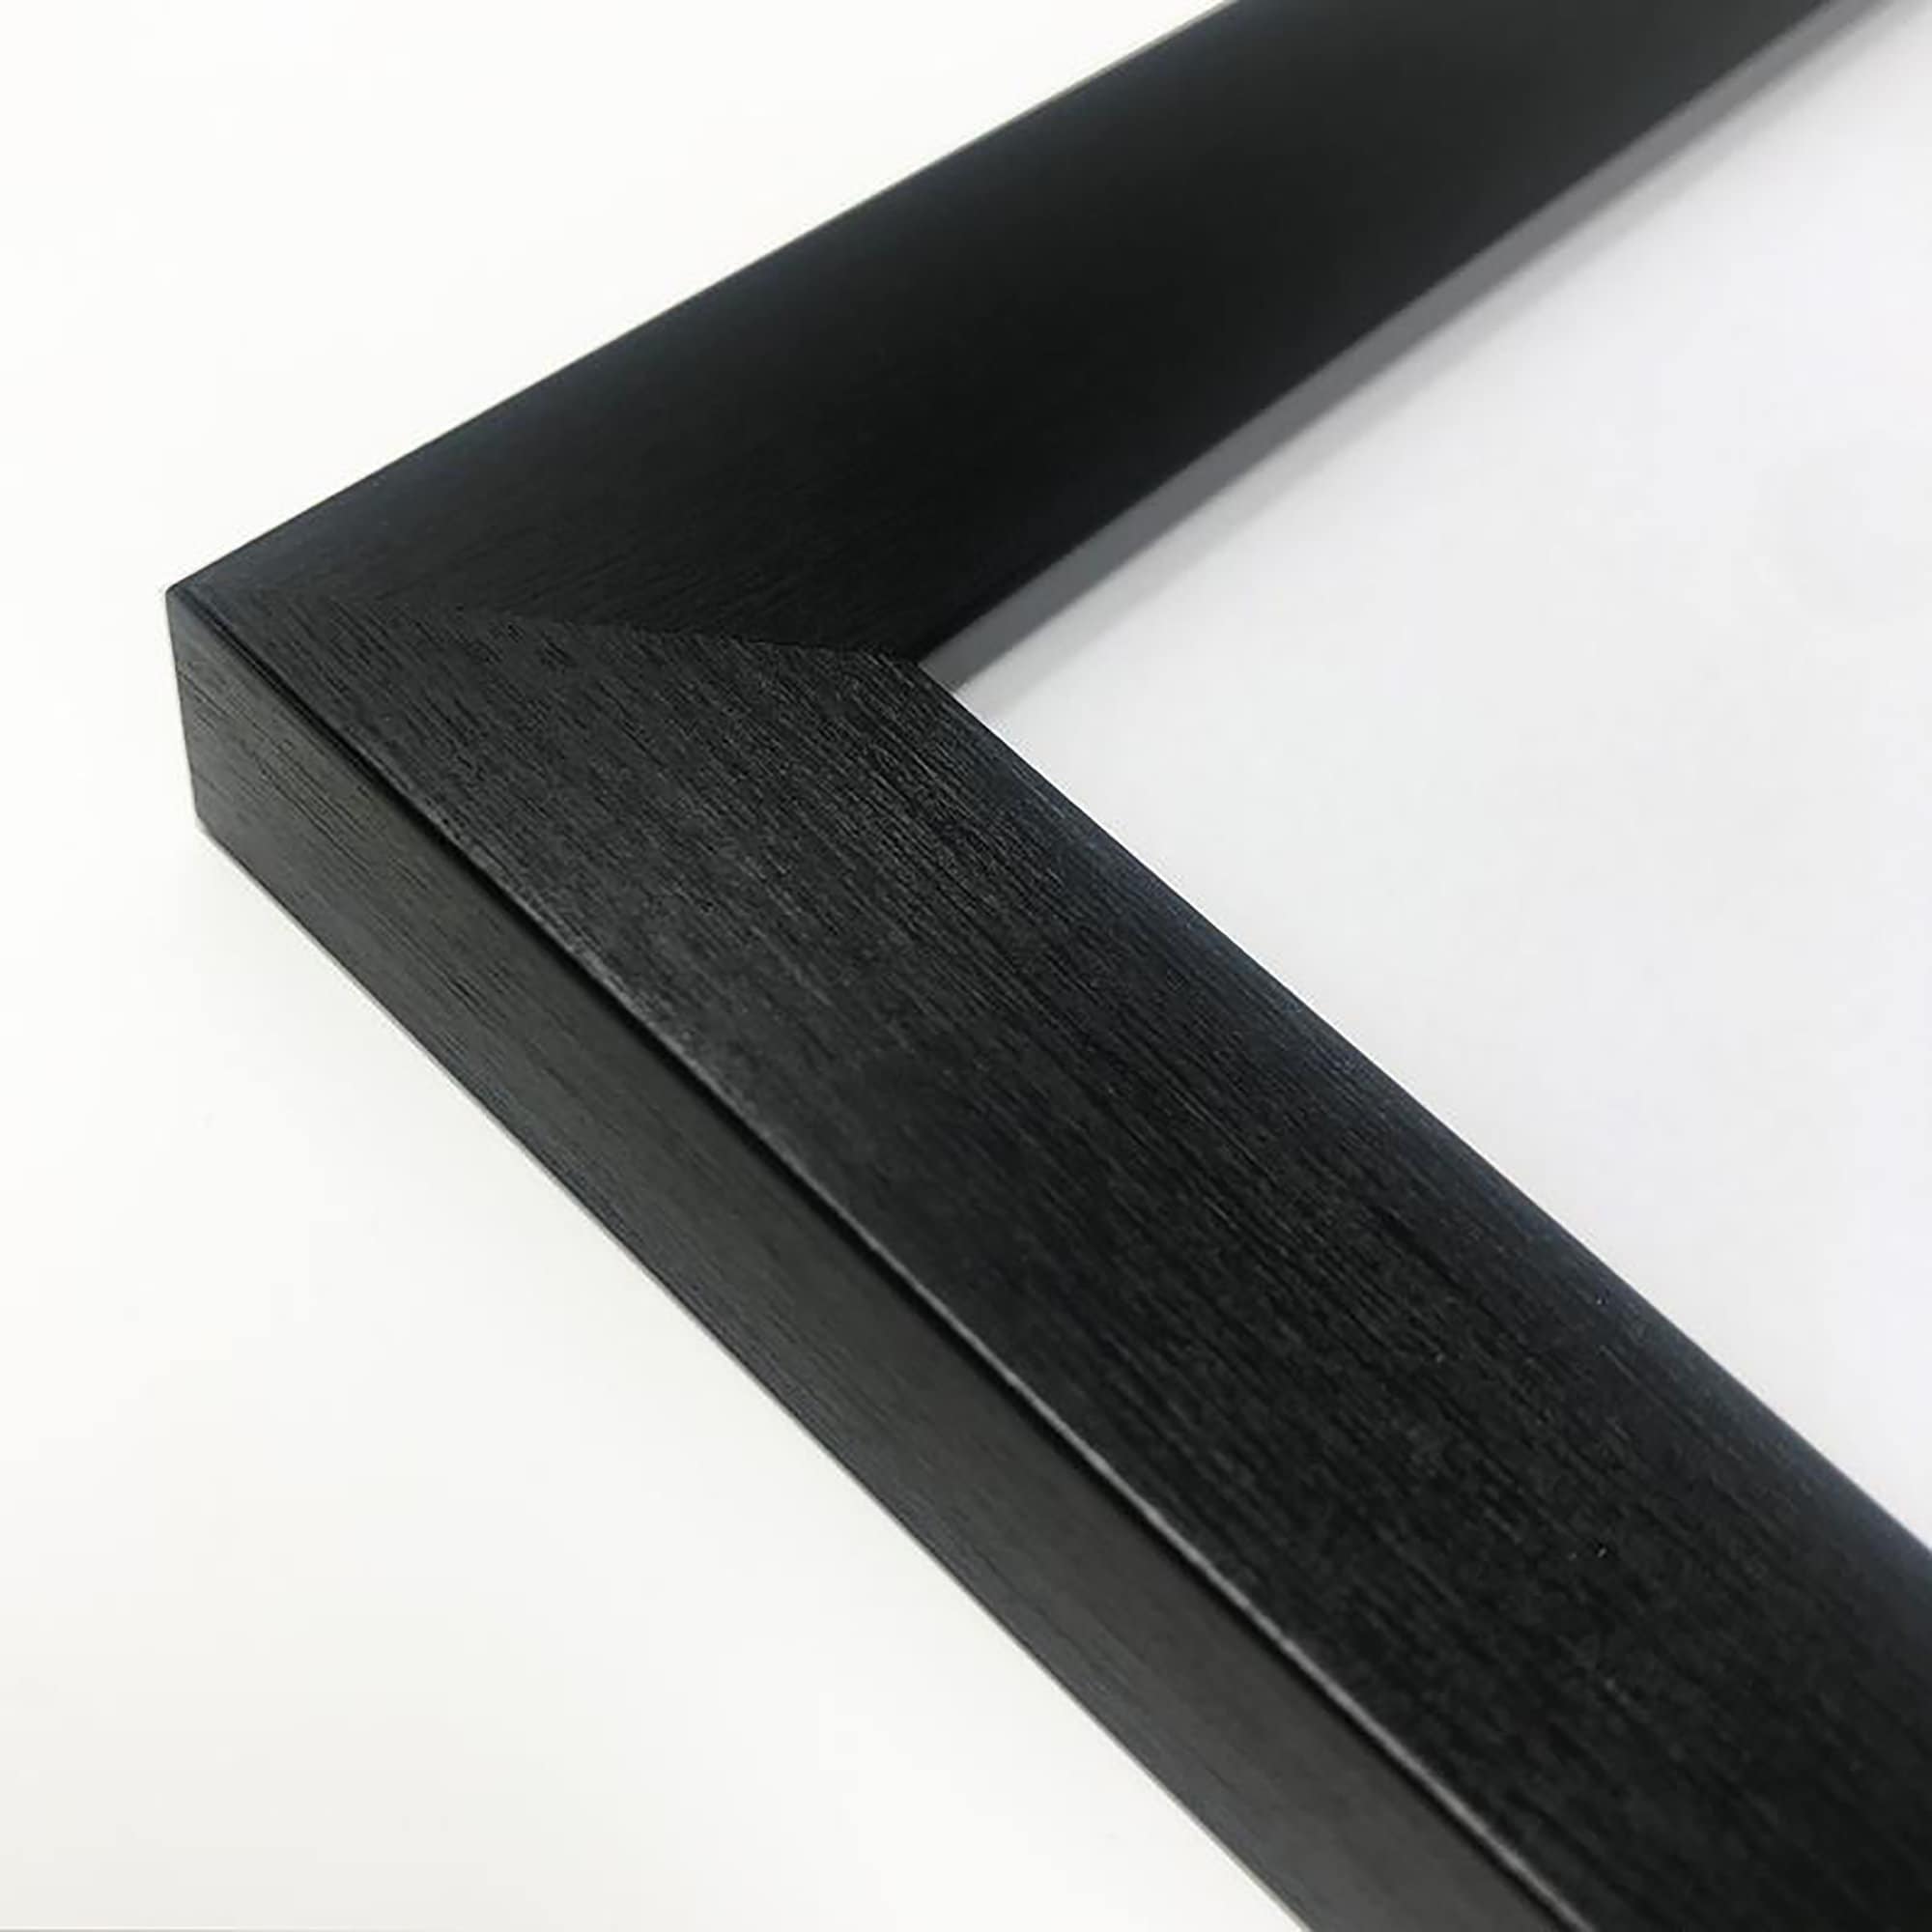 Disque vinyle de 12 pouces fusionné avec cadre de pochette en monture grise  au choix de 6 couleurs de cadre différentes, la taille globale du cadre est  de 26 x 16.5 -  France